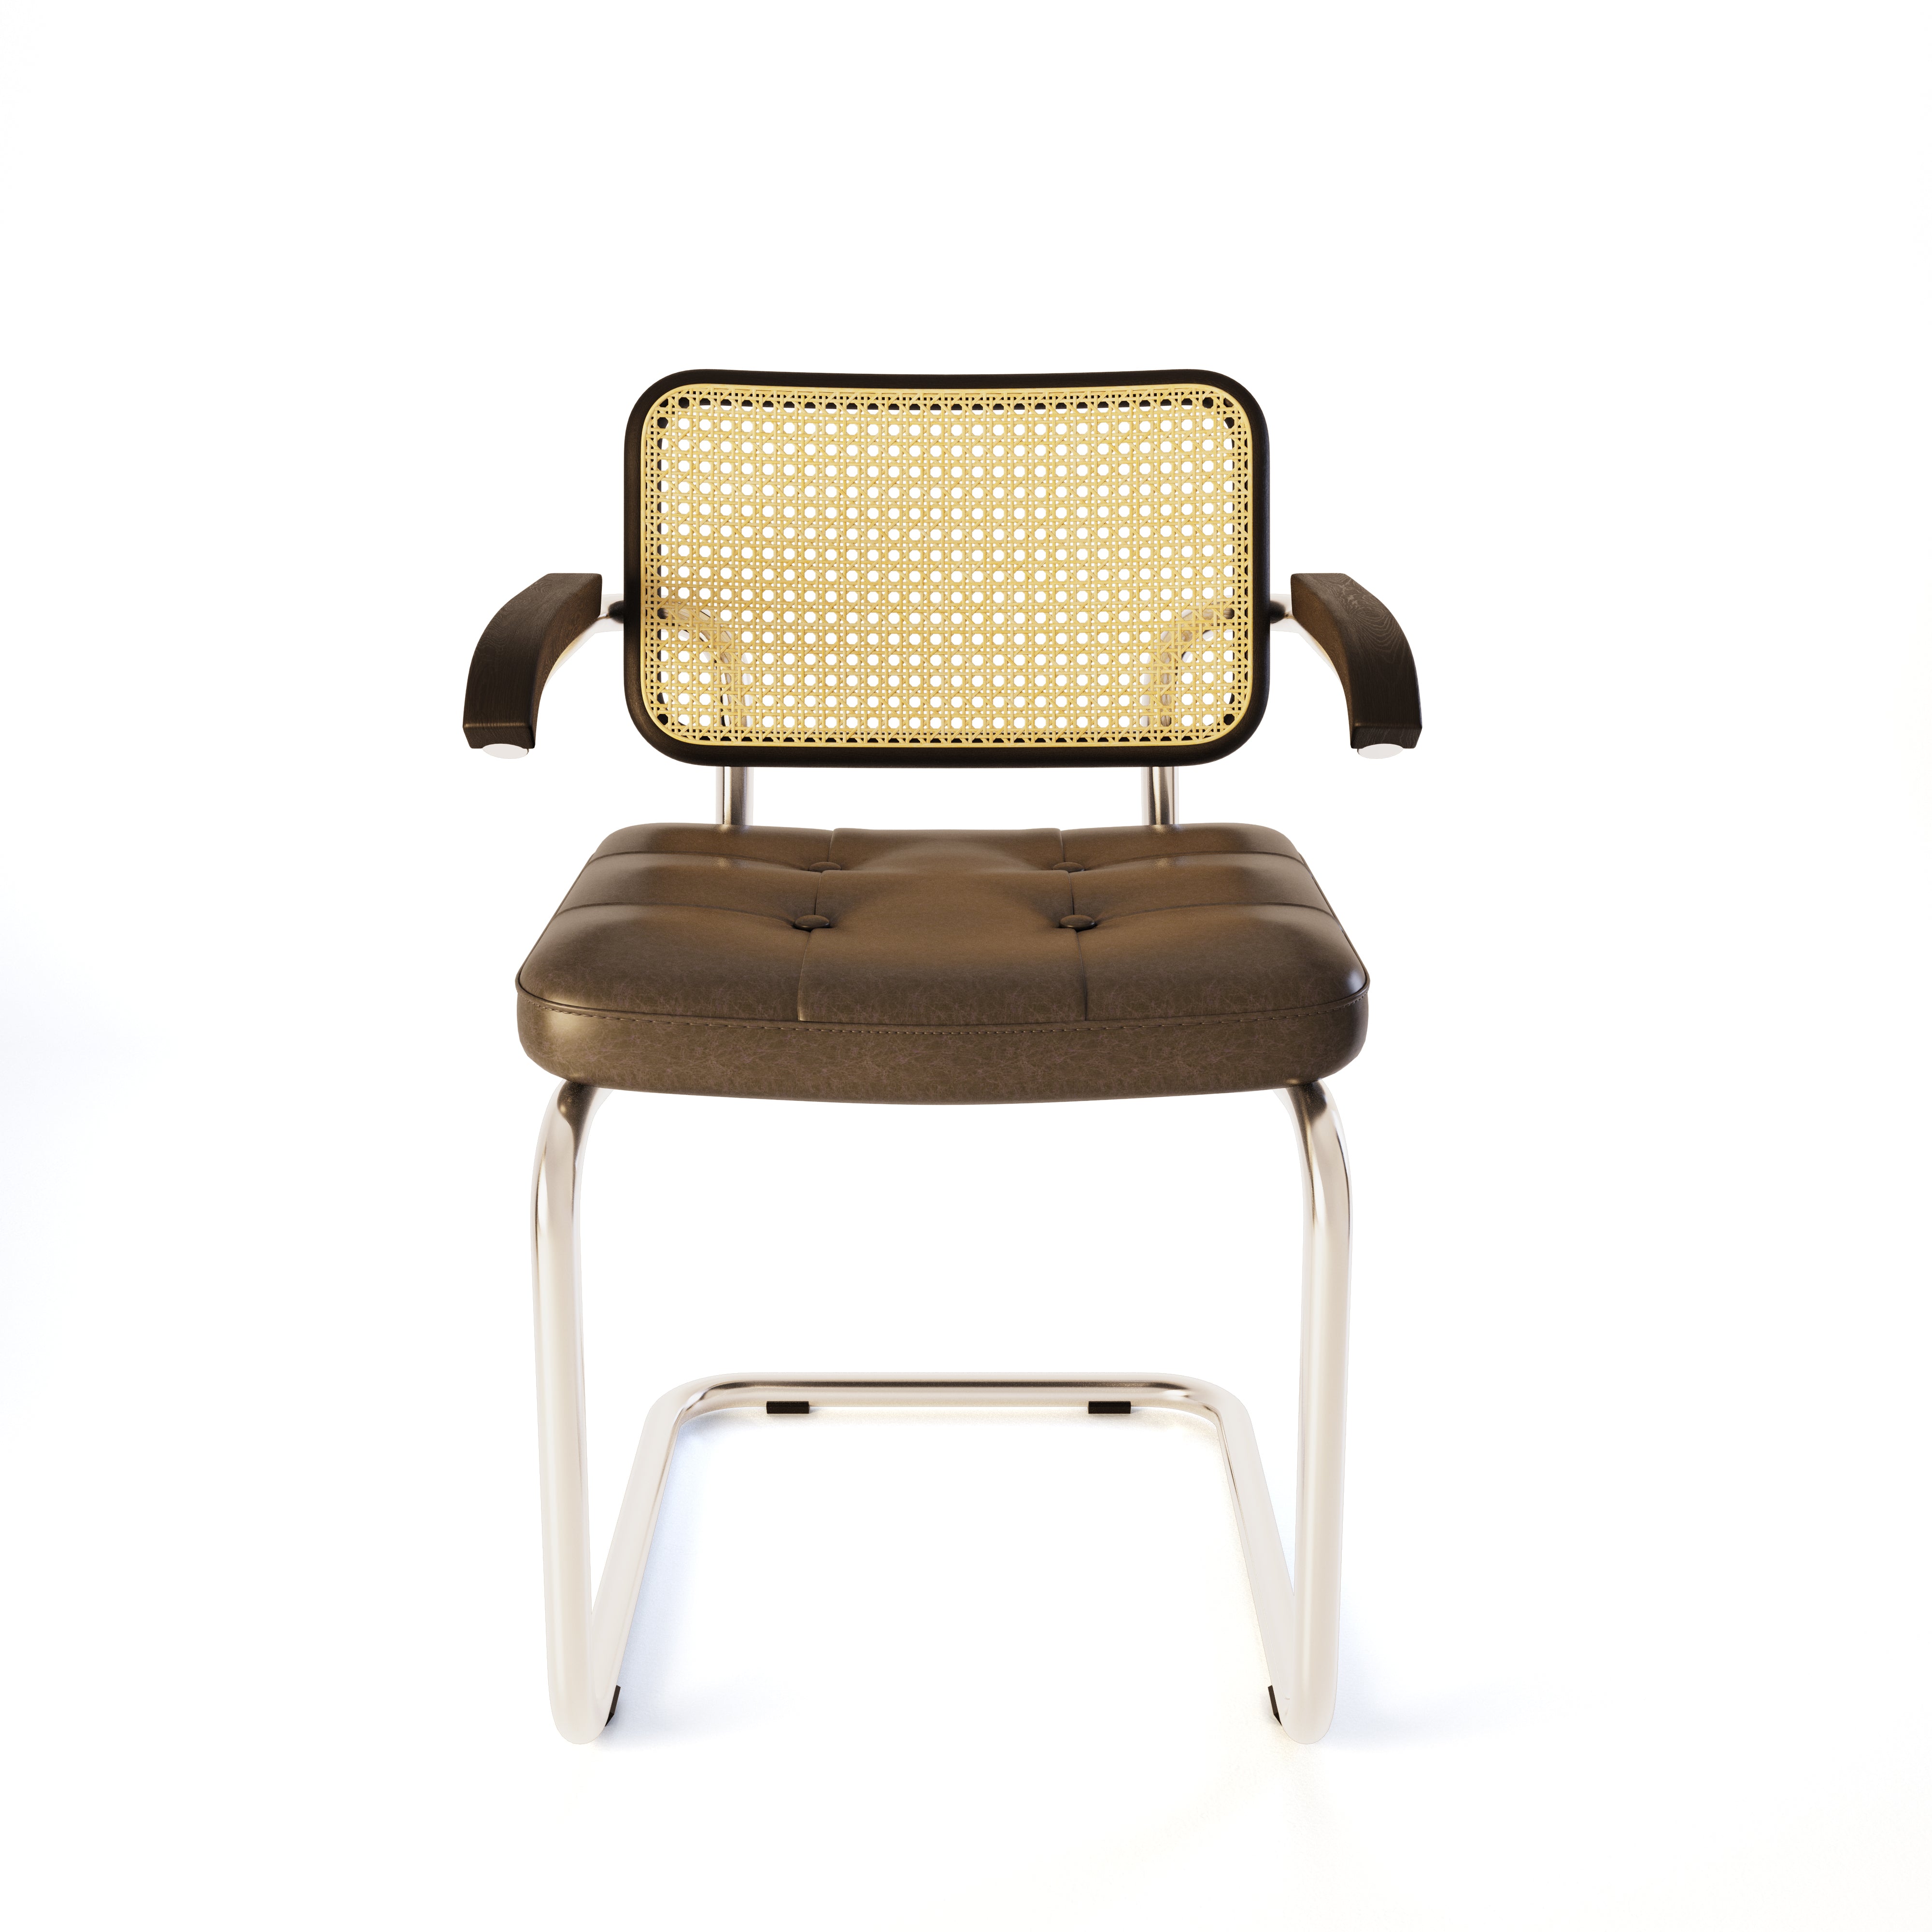 Breuer Cane Chair